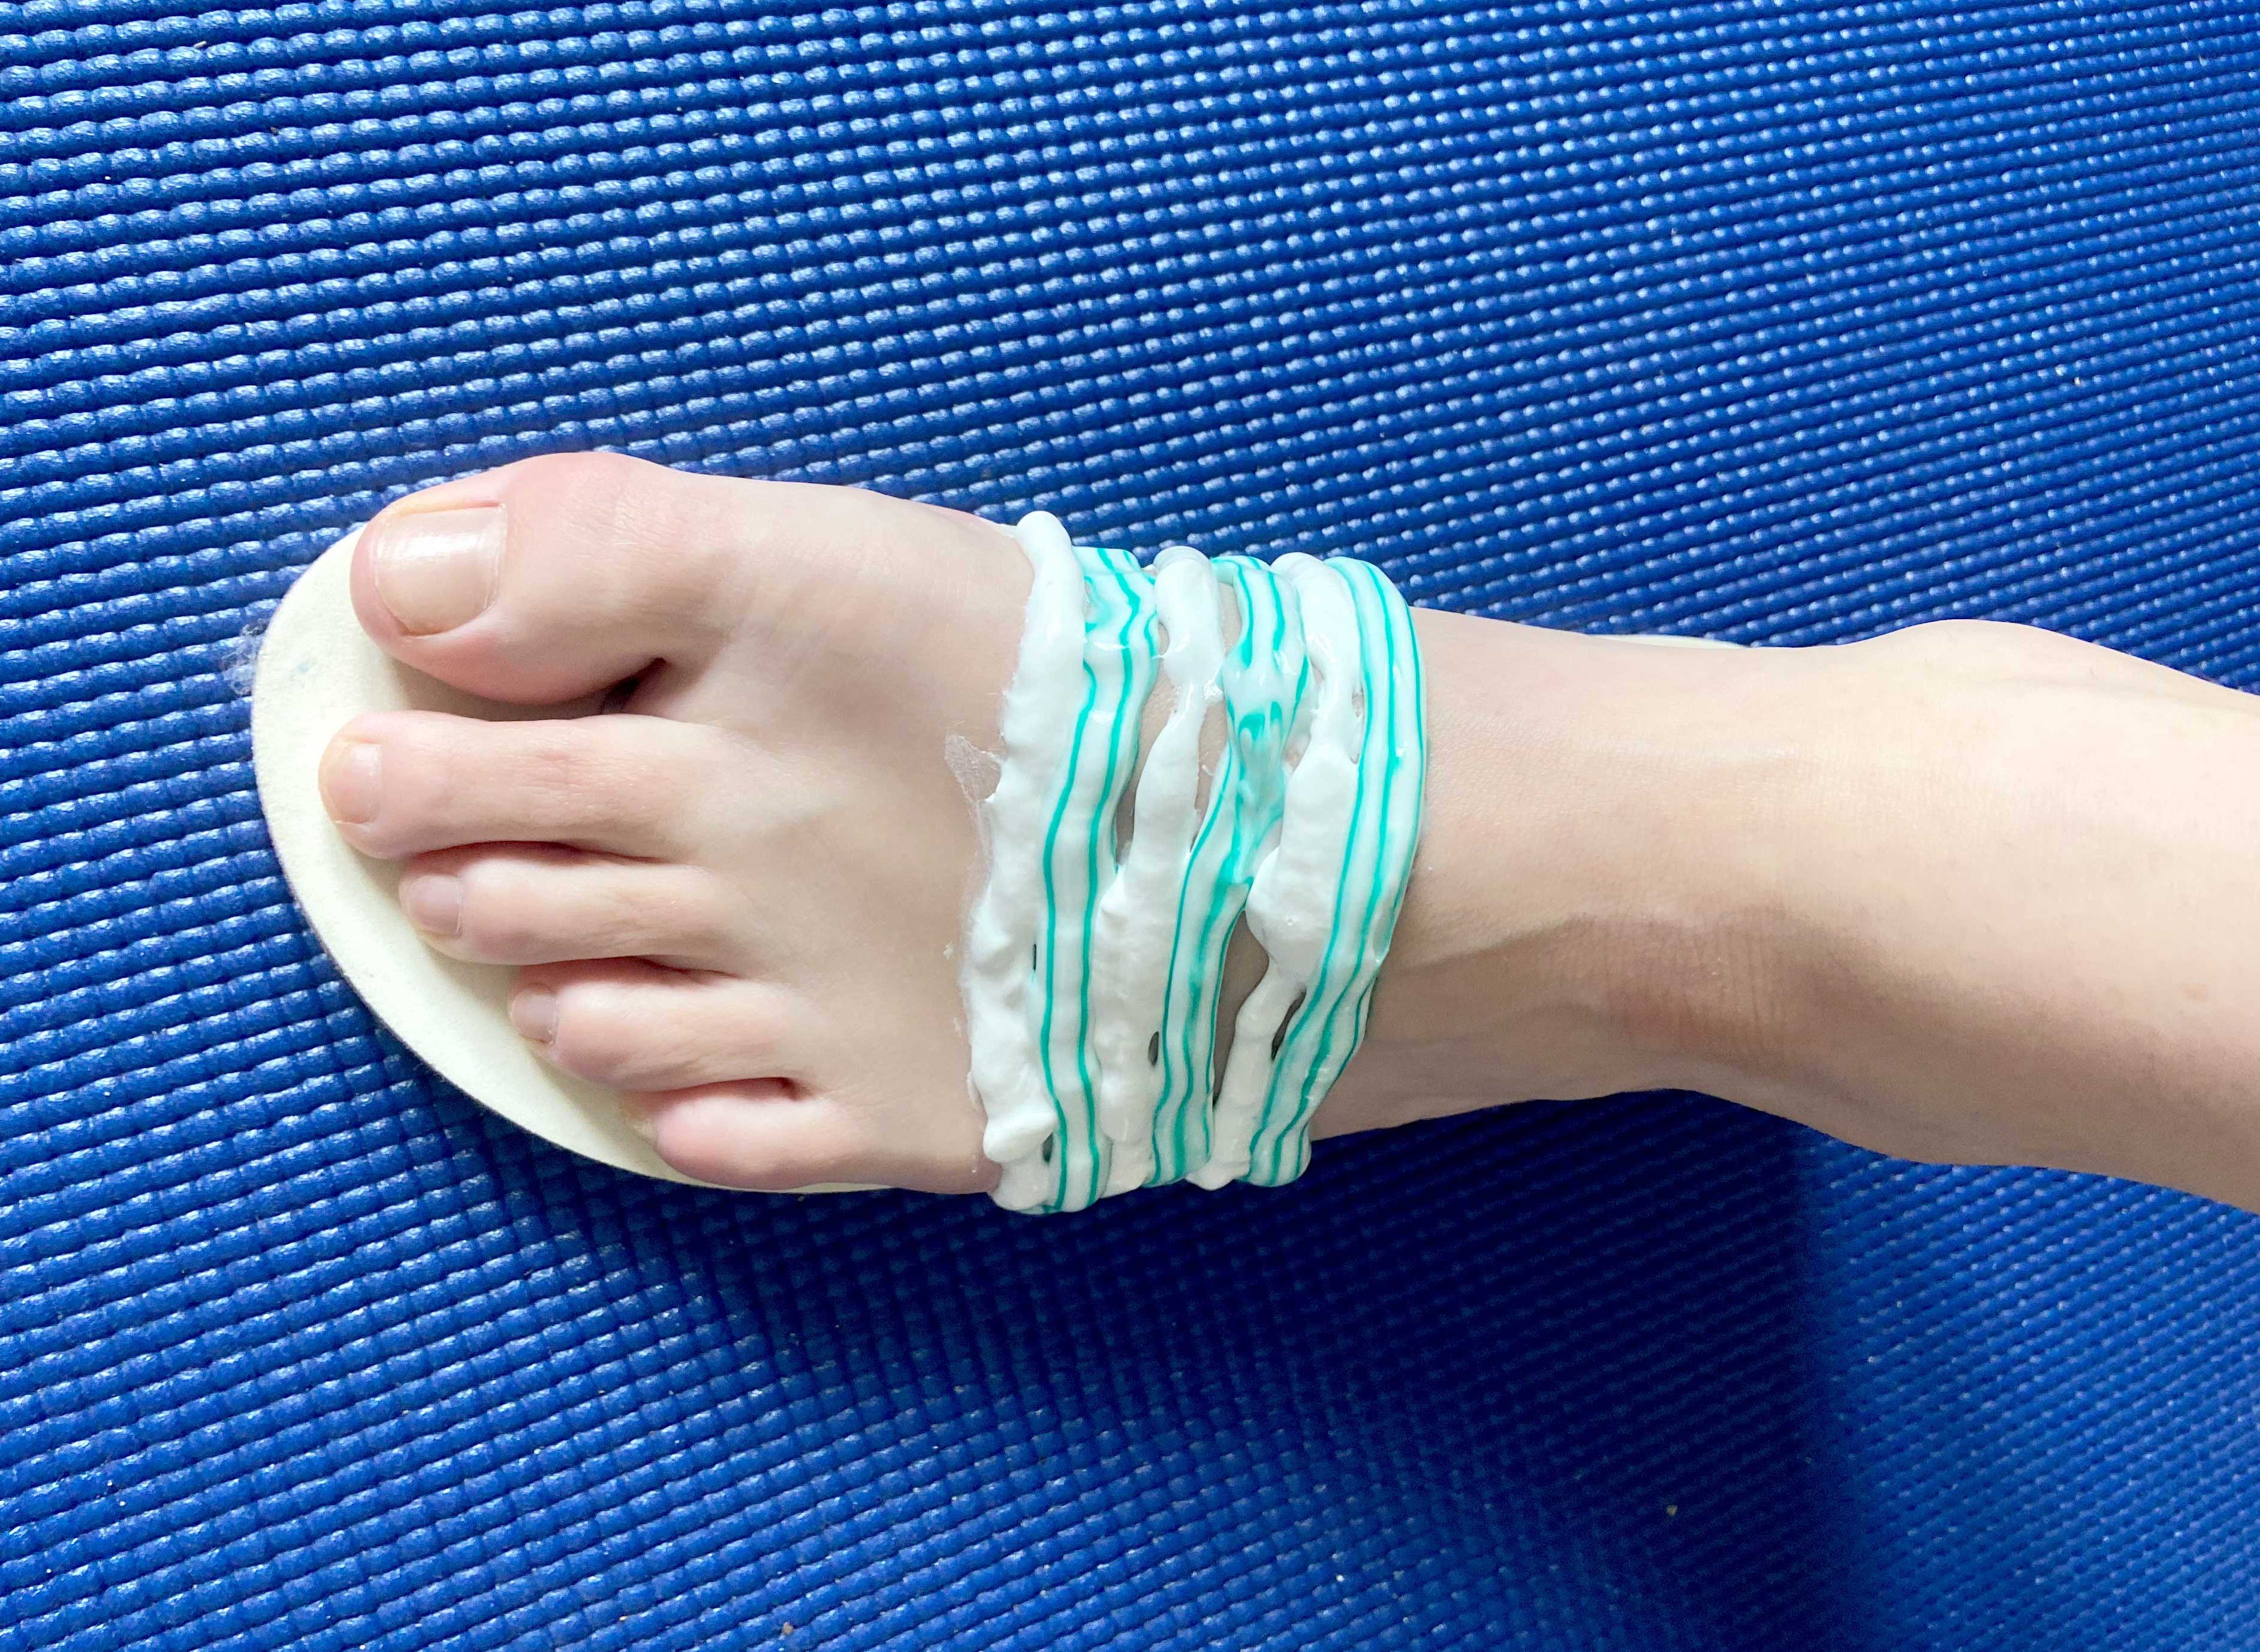 Menschlicher Fuß auf einer Schuheinlage vor blauem Hintergrund. Auf dem Fuß sind Zahnpastastreifen